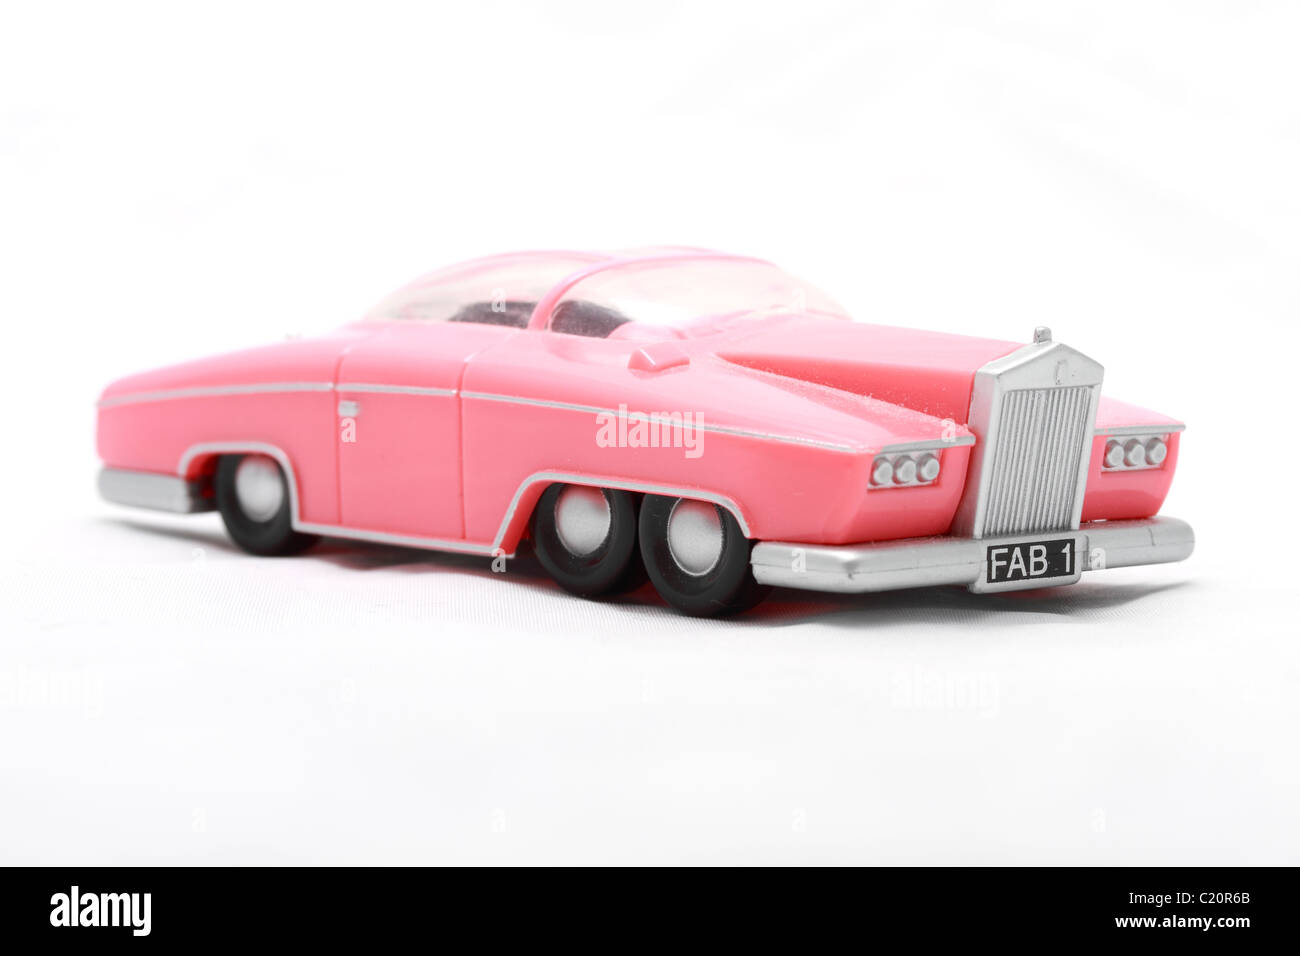 Lady Penelope's toy Rolls Royce ou le modèle de la télévision de la série de marionnettes de Gerry Anderson Thunderbirds. Lady Penelope est l'organisati Banque D'Images